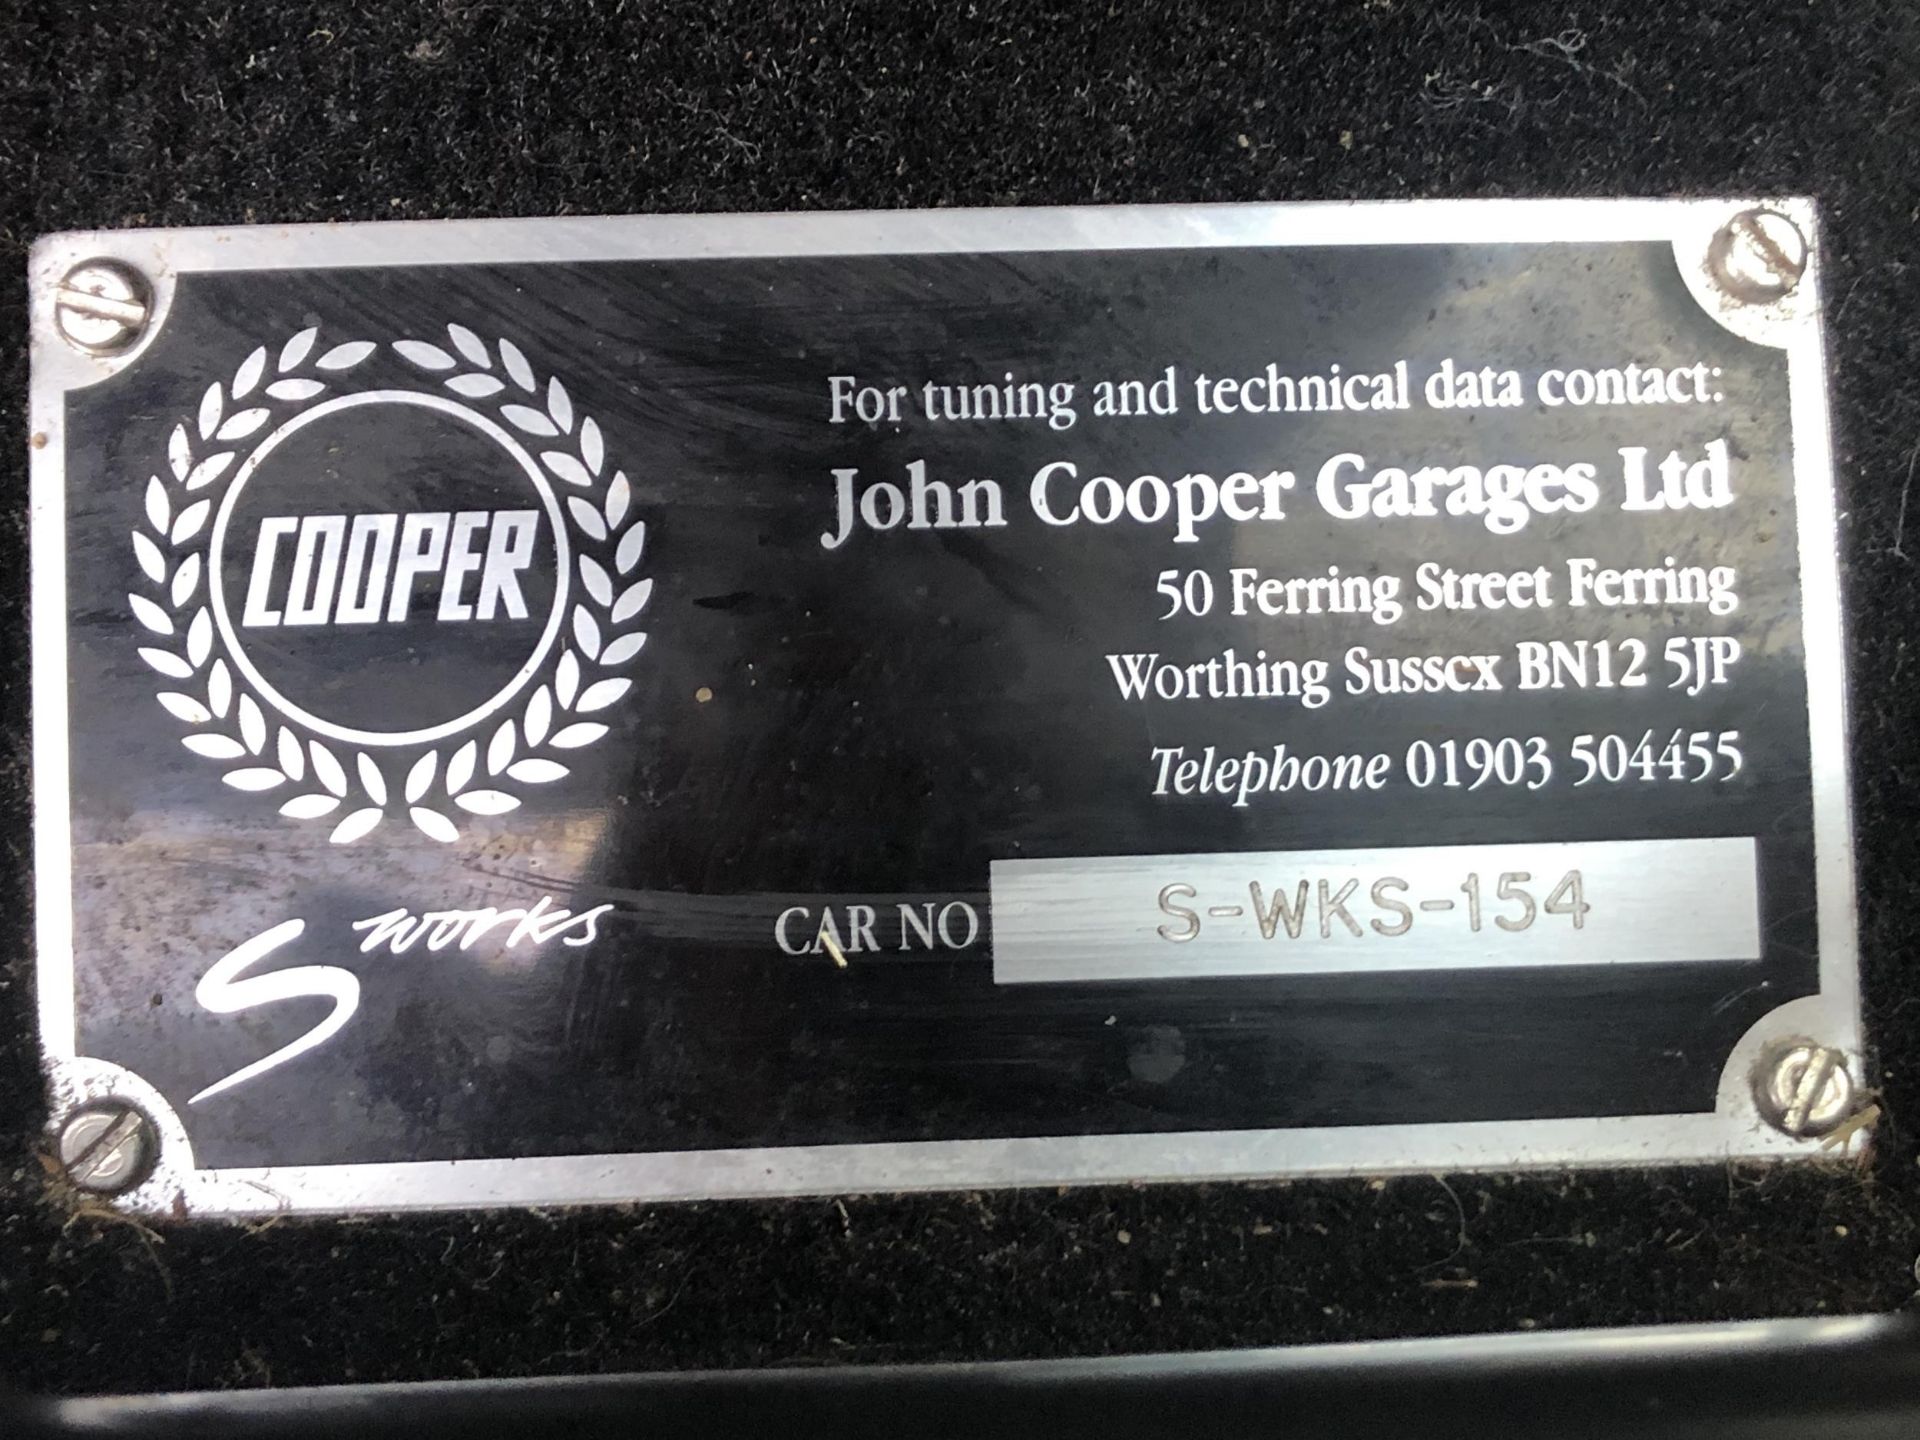 2001 Mini Cooper S John Cooper Works Registration number Y567 GFG Chassis number SAXXNRAZEYD183786 - Image 21 of 46